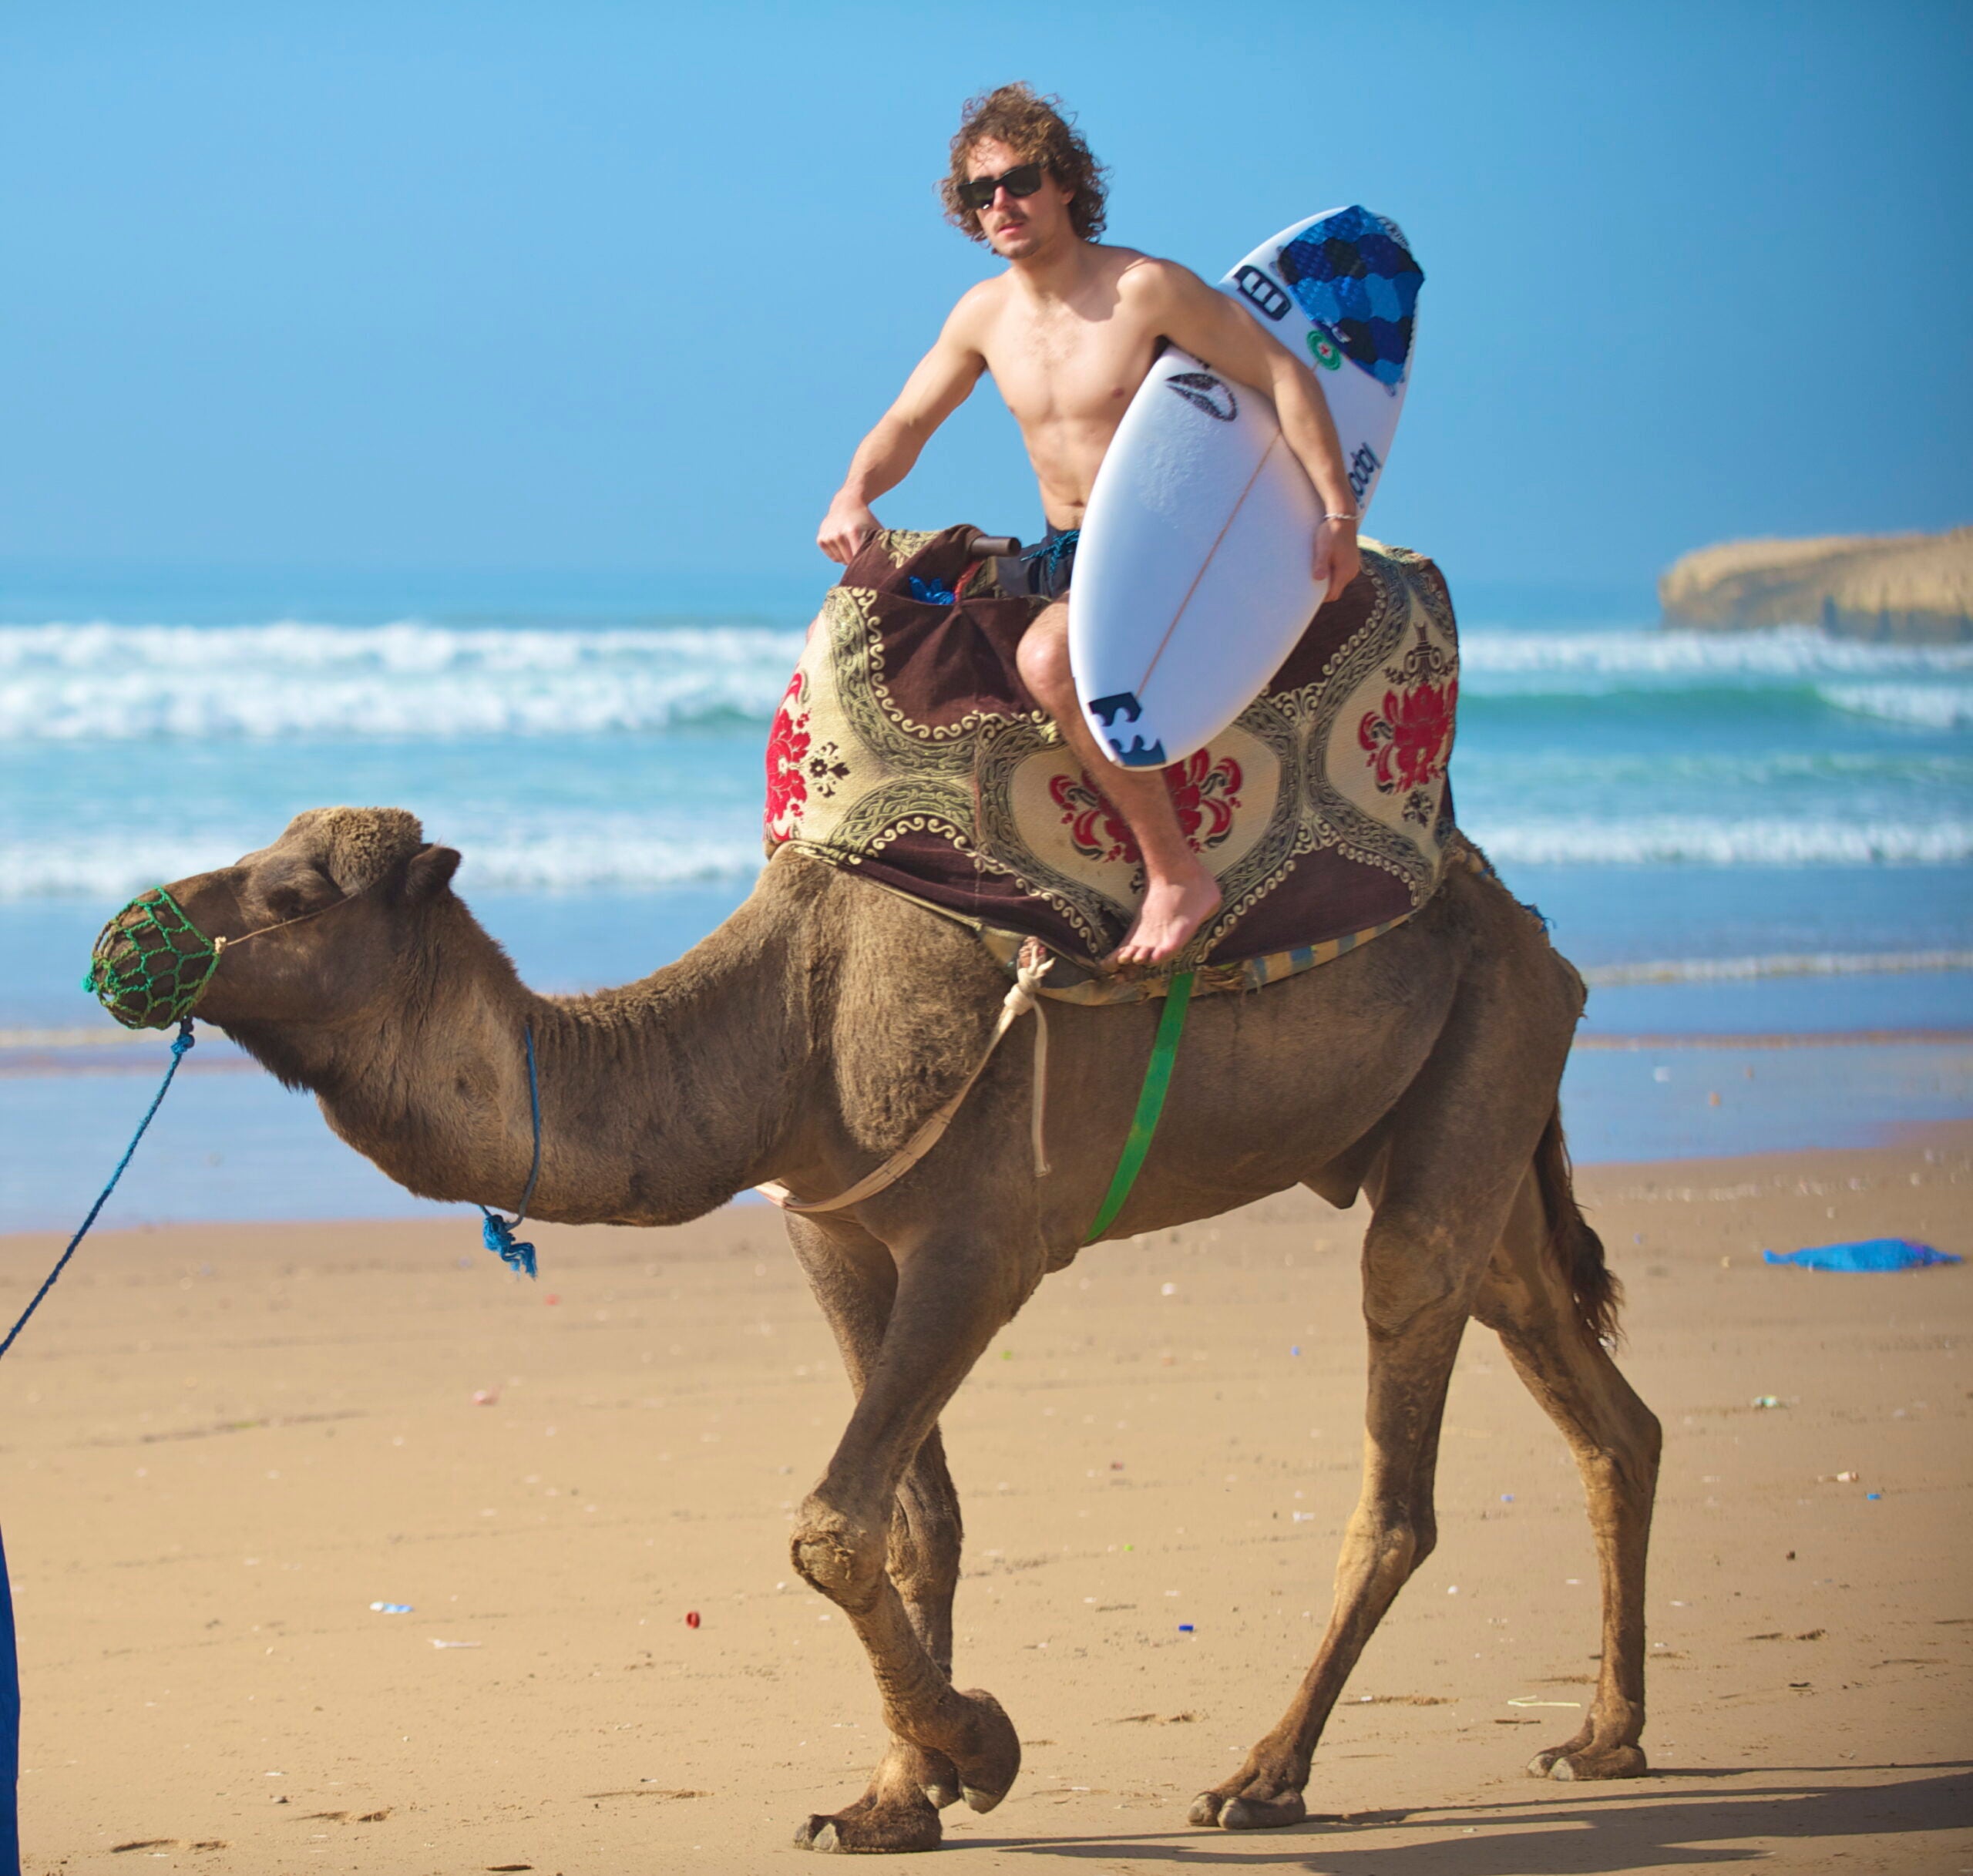 Tag med Riders.dk på surftur til Marokko i november